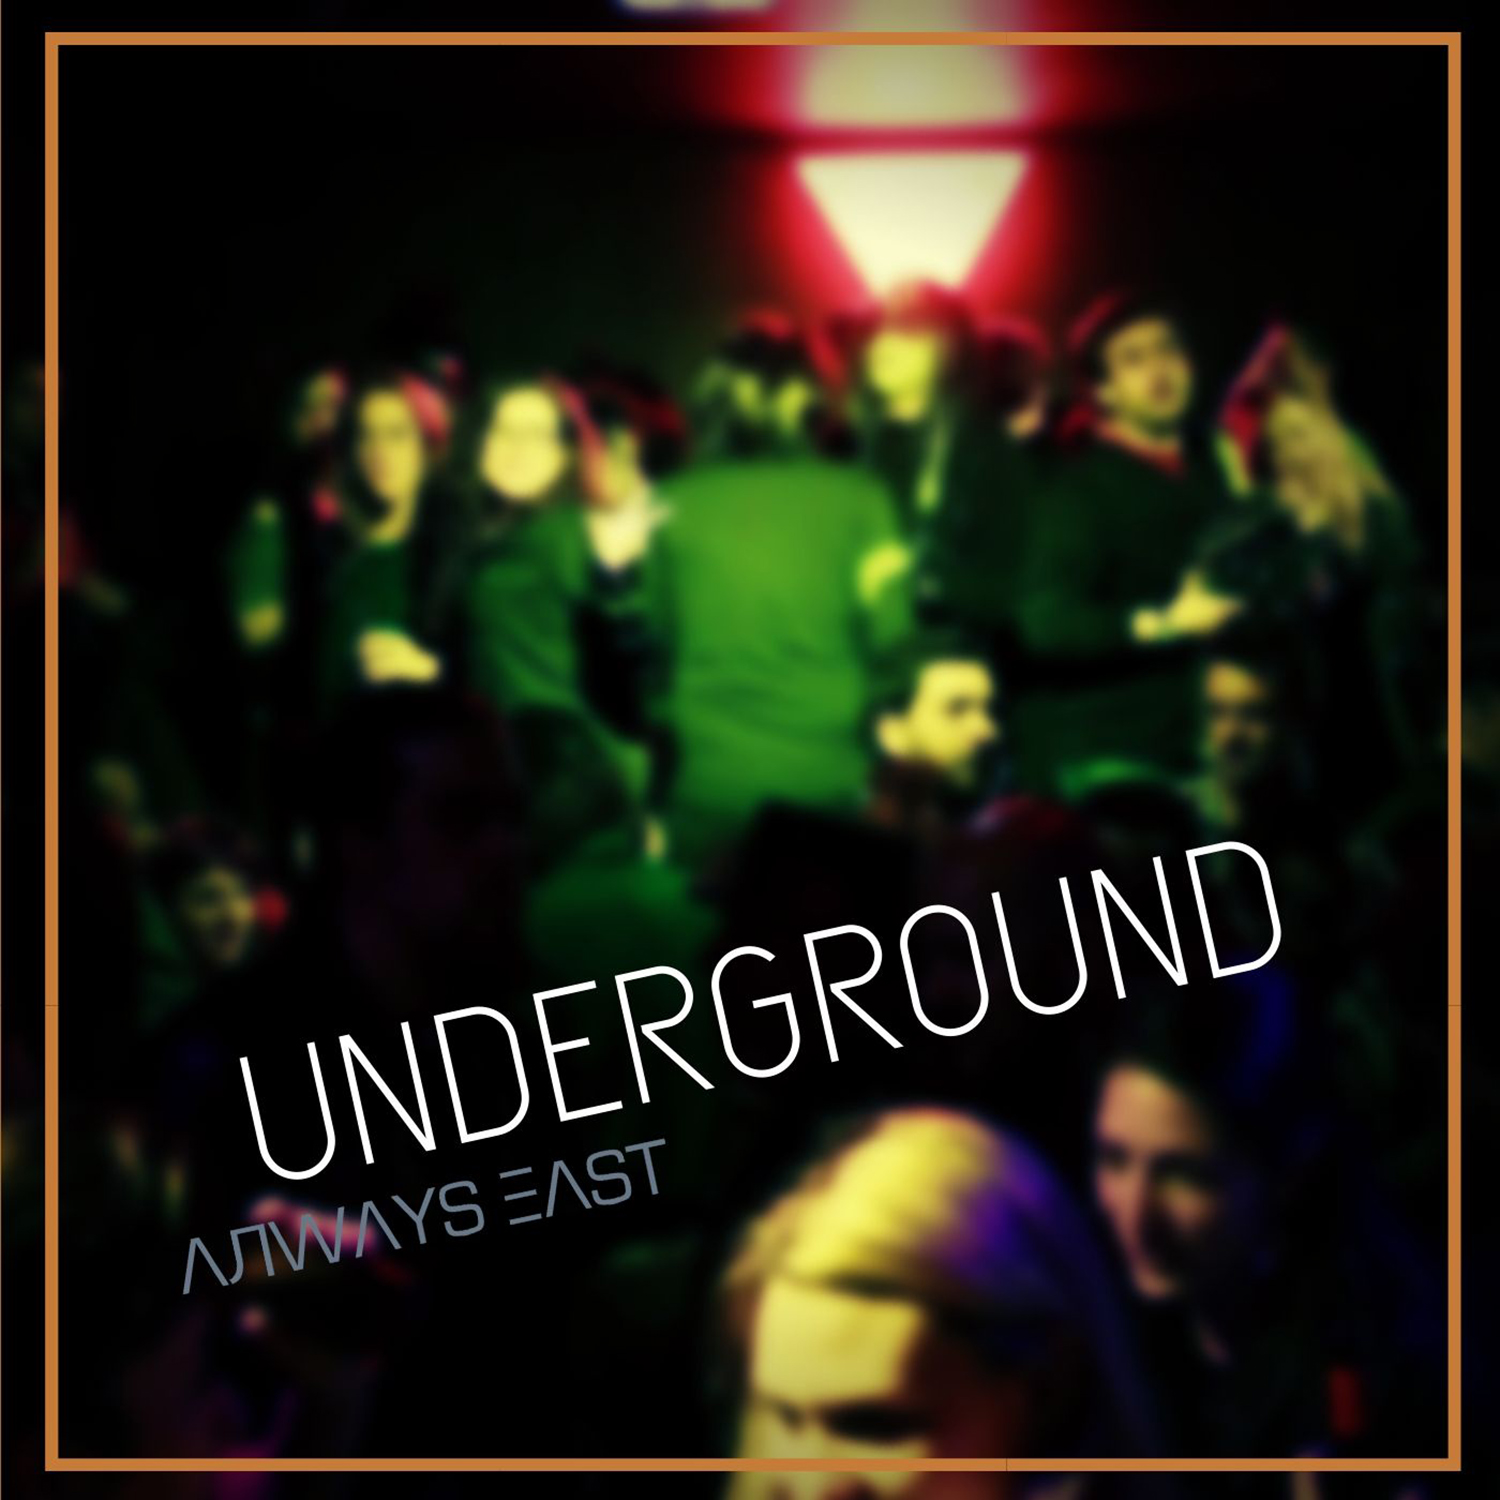 always east Underground